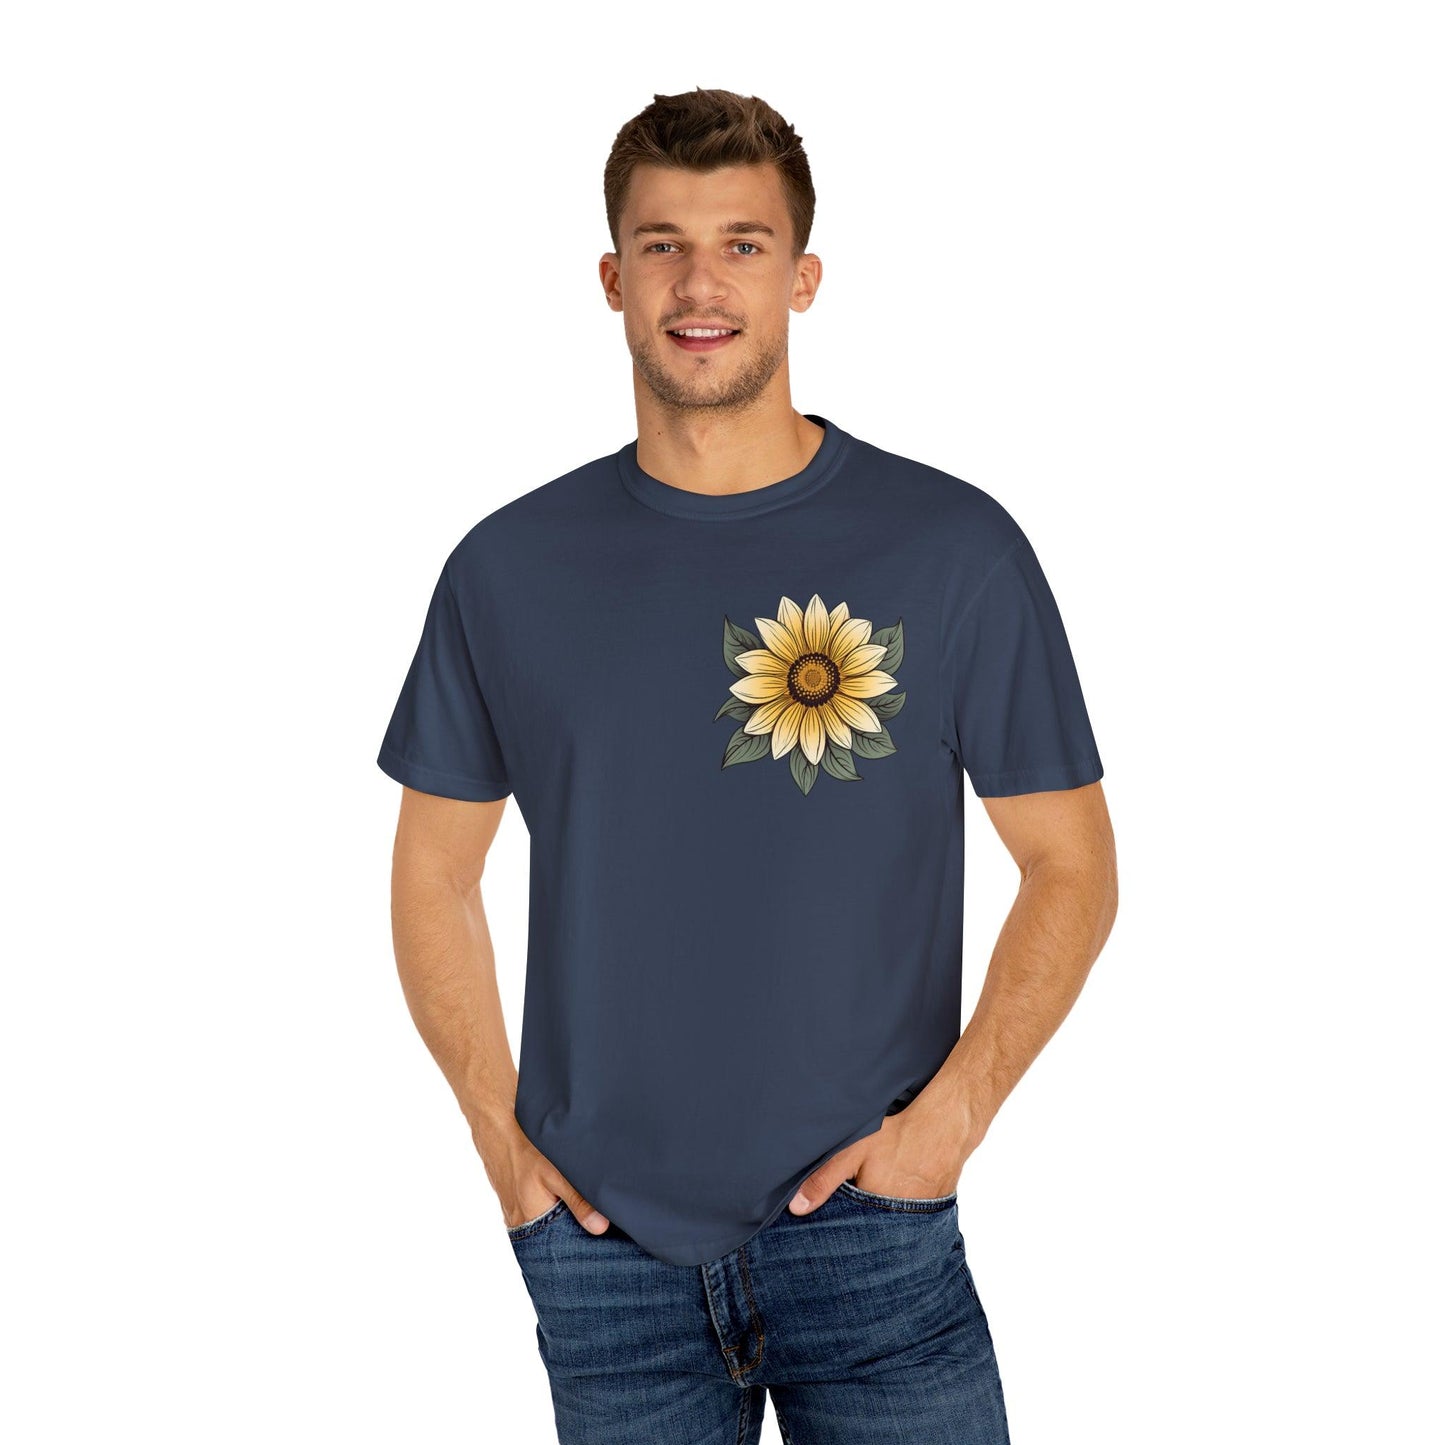 Sunflower Shirt Women Flower Shirt Aesthetic, Floral Graphic Tee Floral Shirt Flower T-shirt, Wild Flower Shirt Gift For Her Wildflower T-shirt